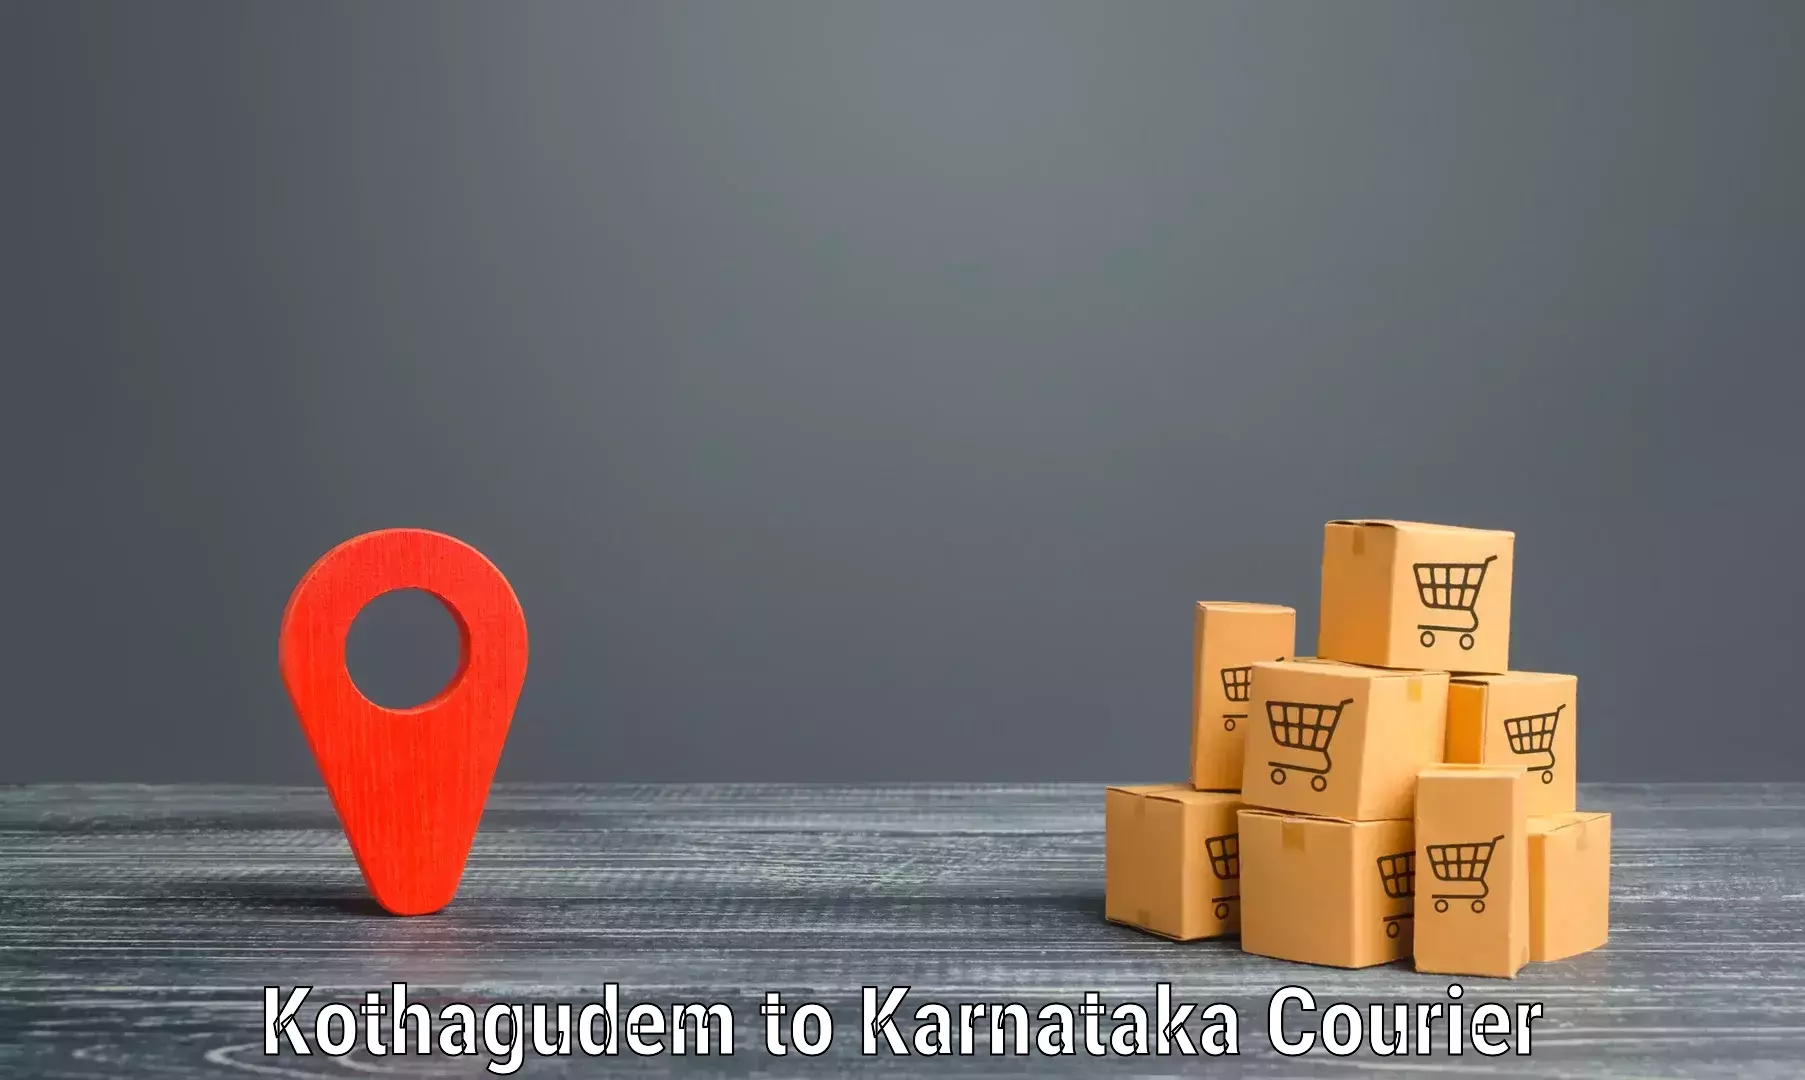 Custom logistics solutions Kothagudem to Davangere